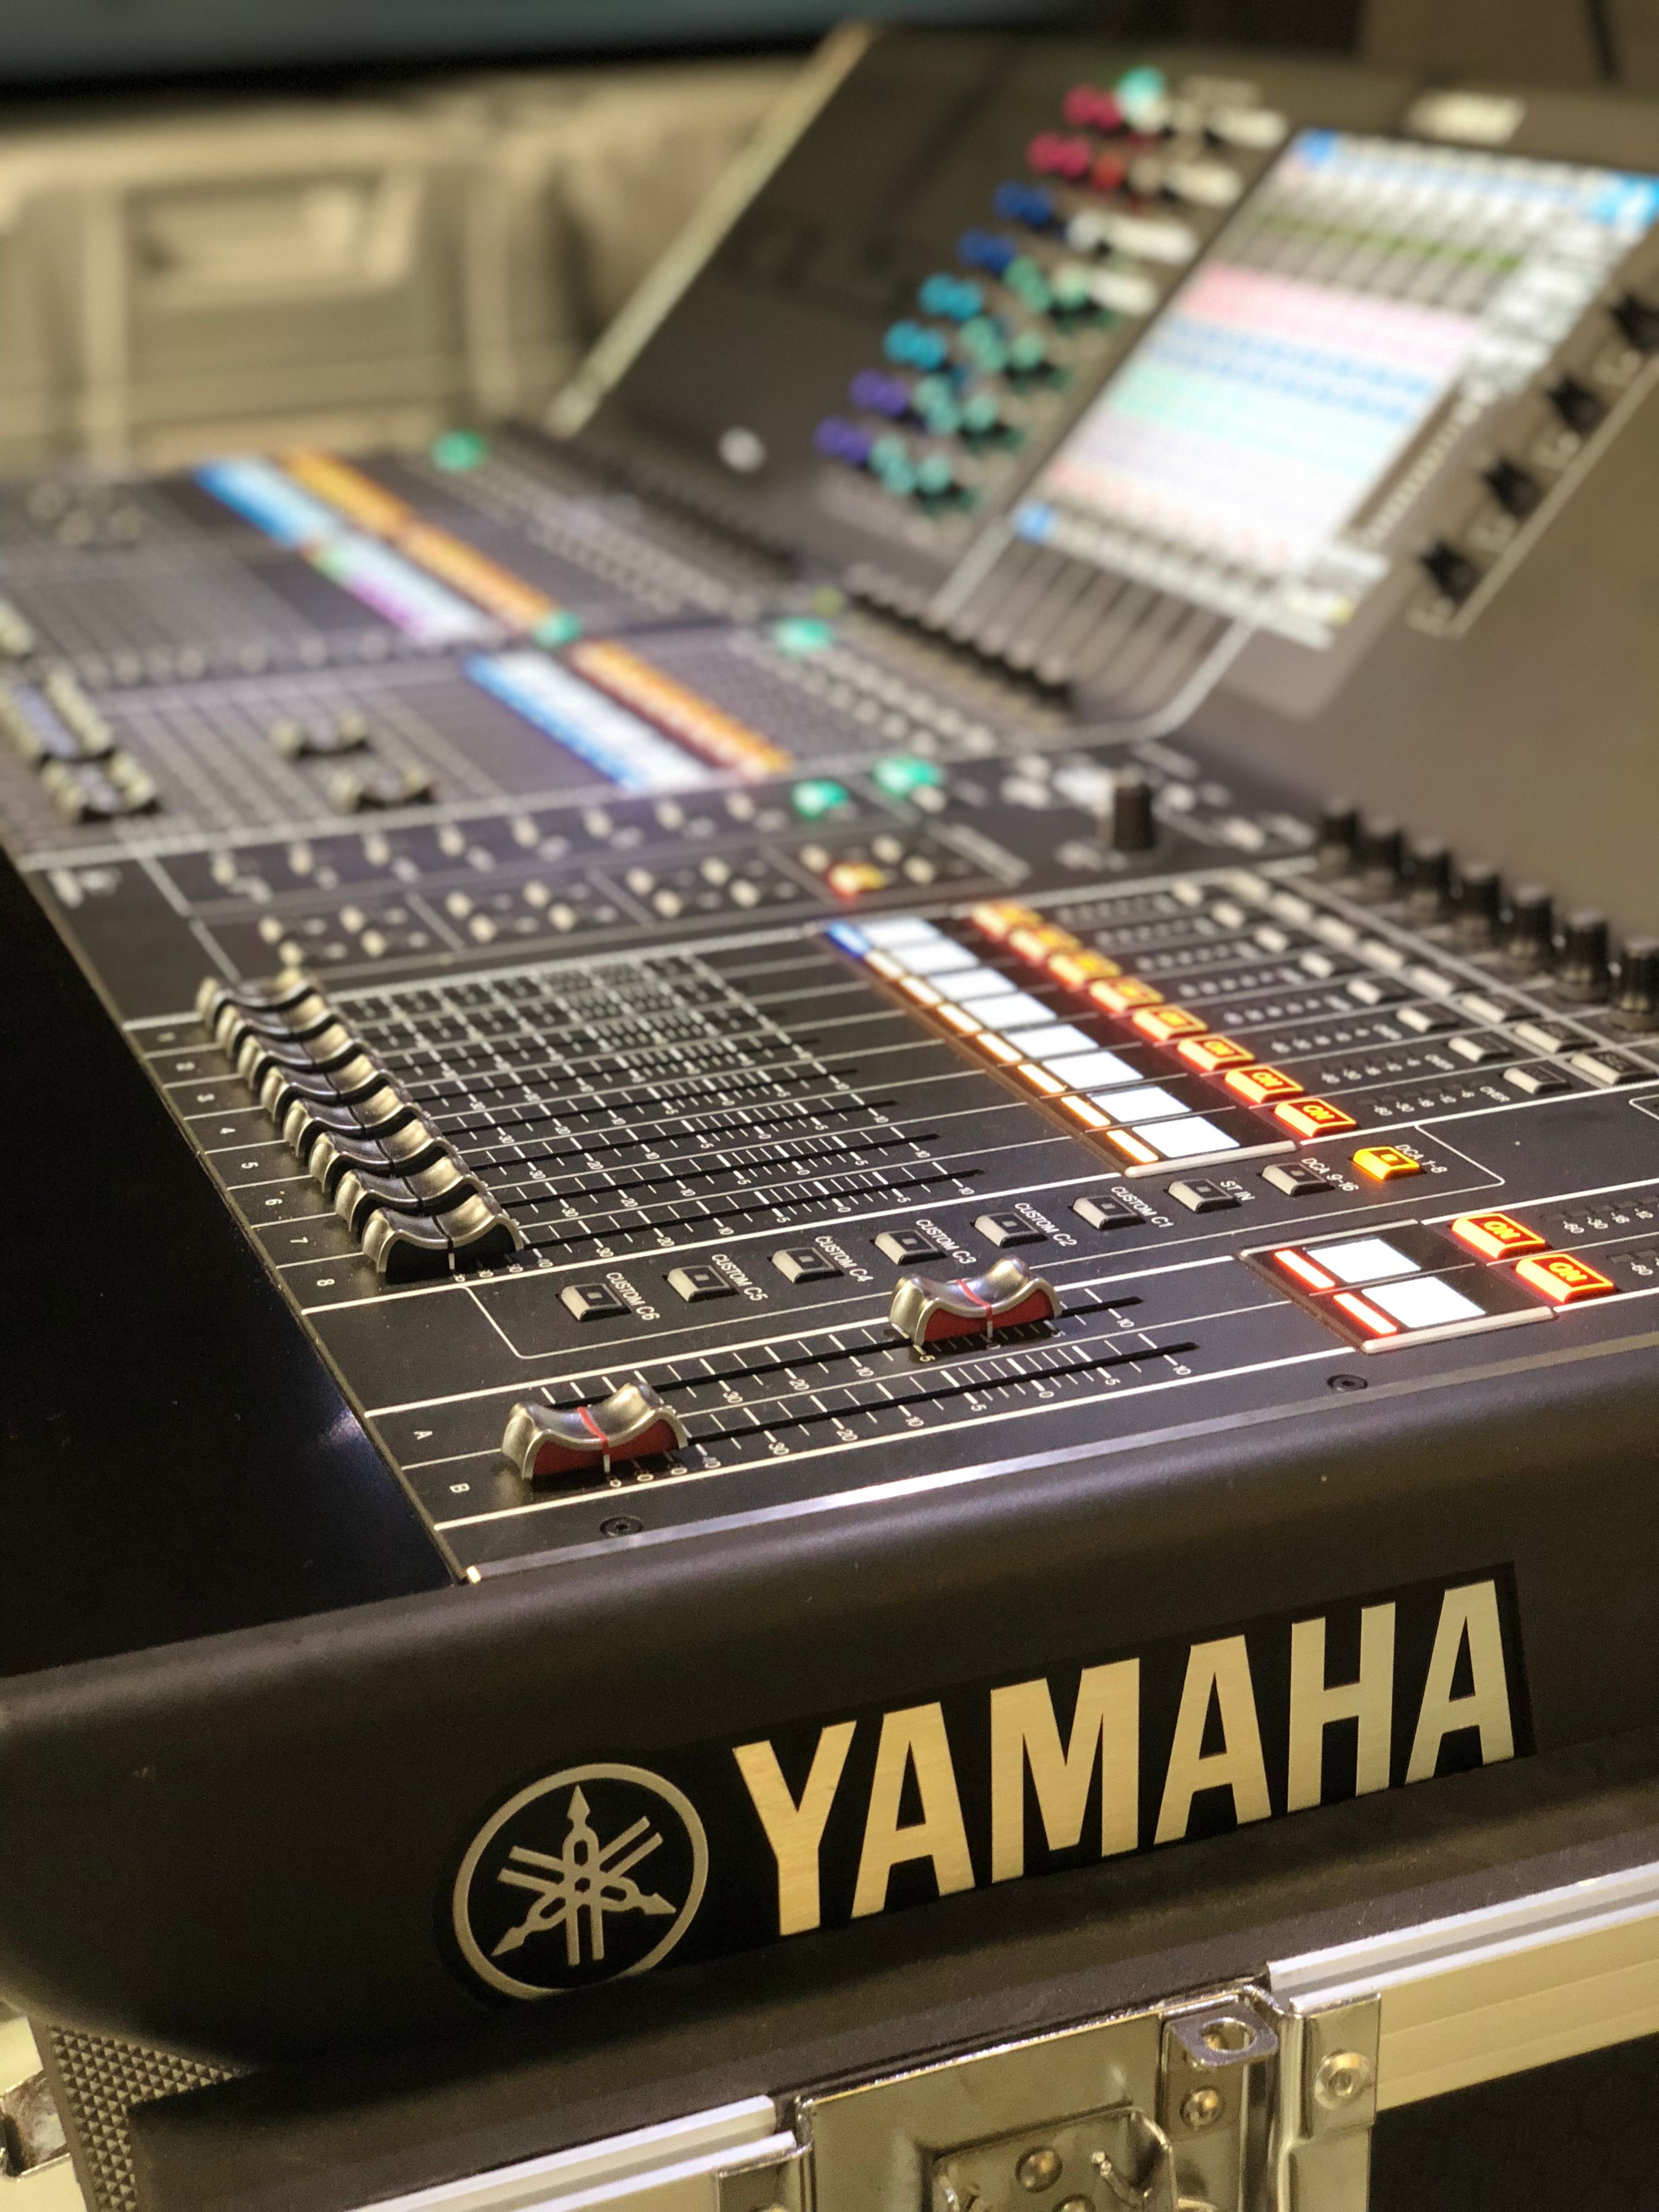 Yamaha Audio Mixer